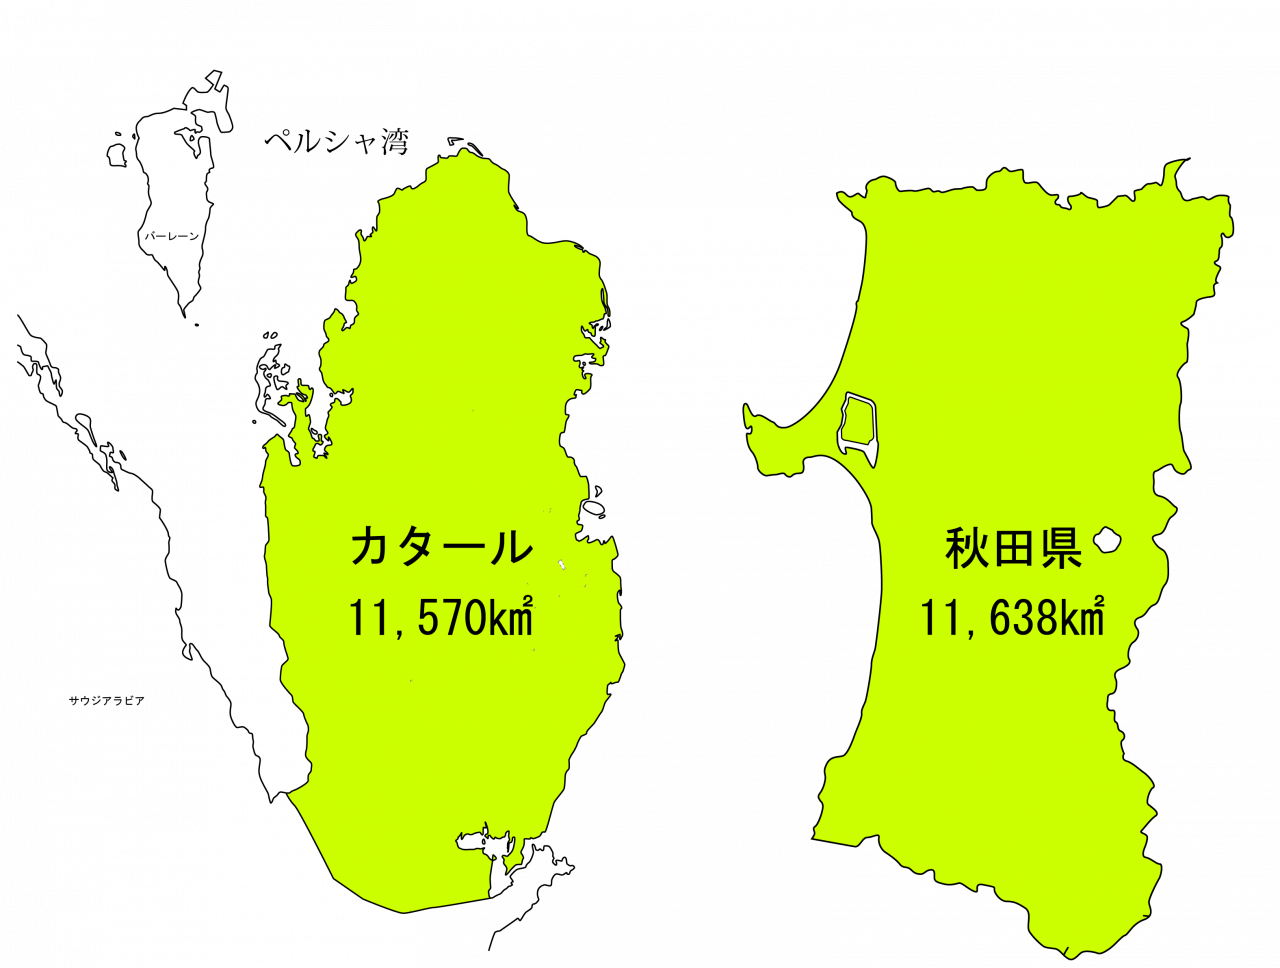 秋田の面積を示している画像です [513KB]